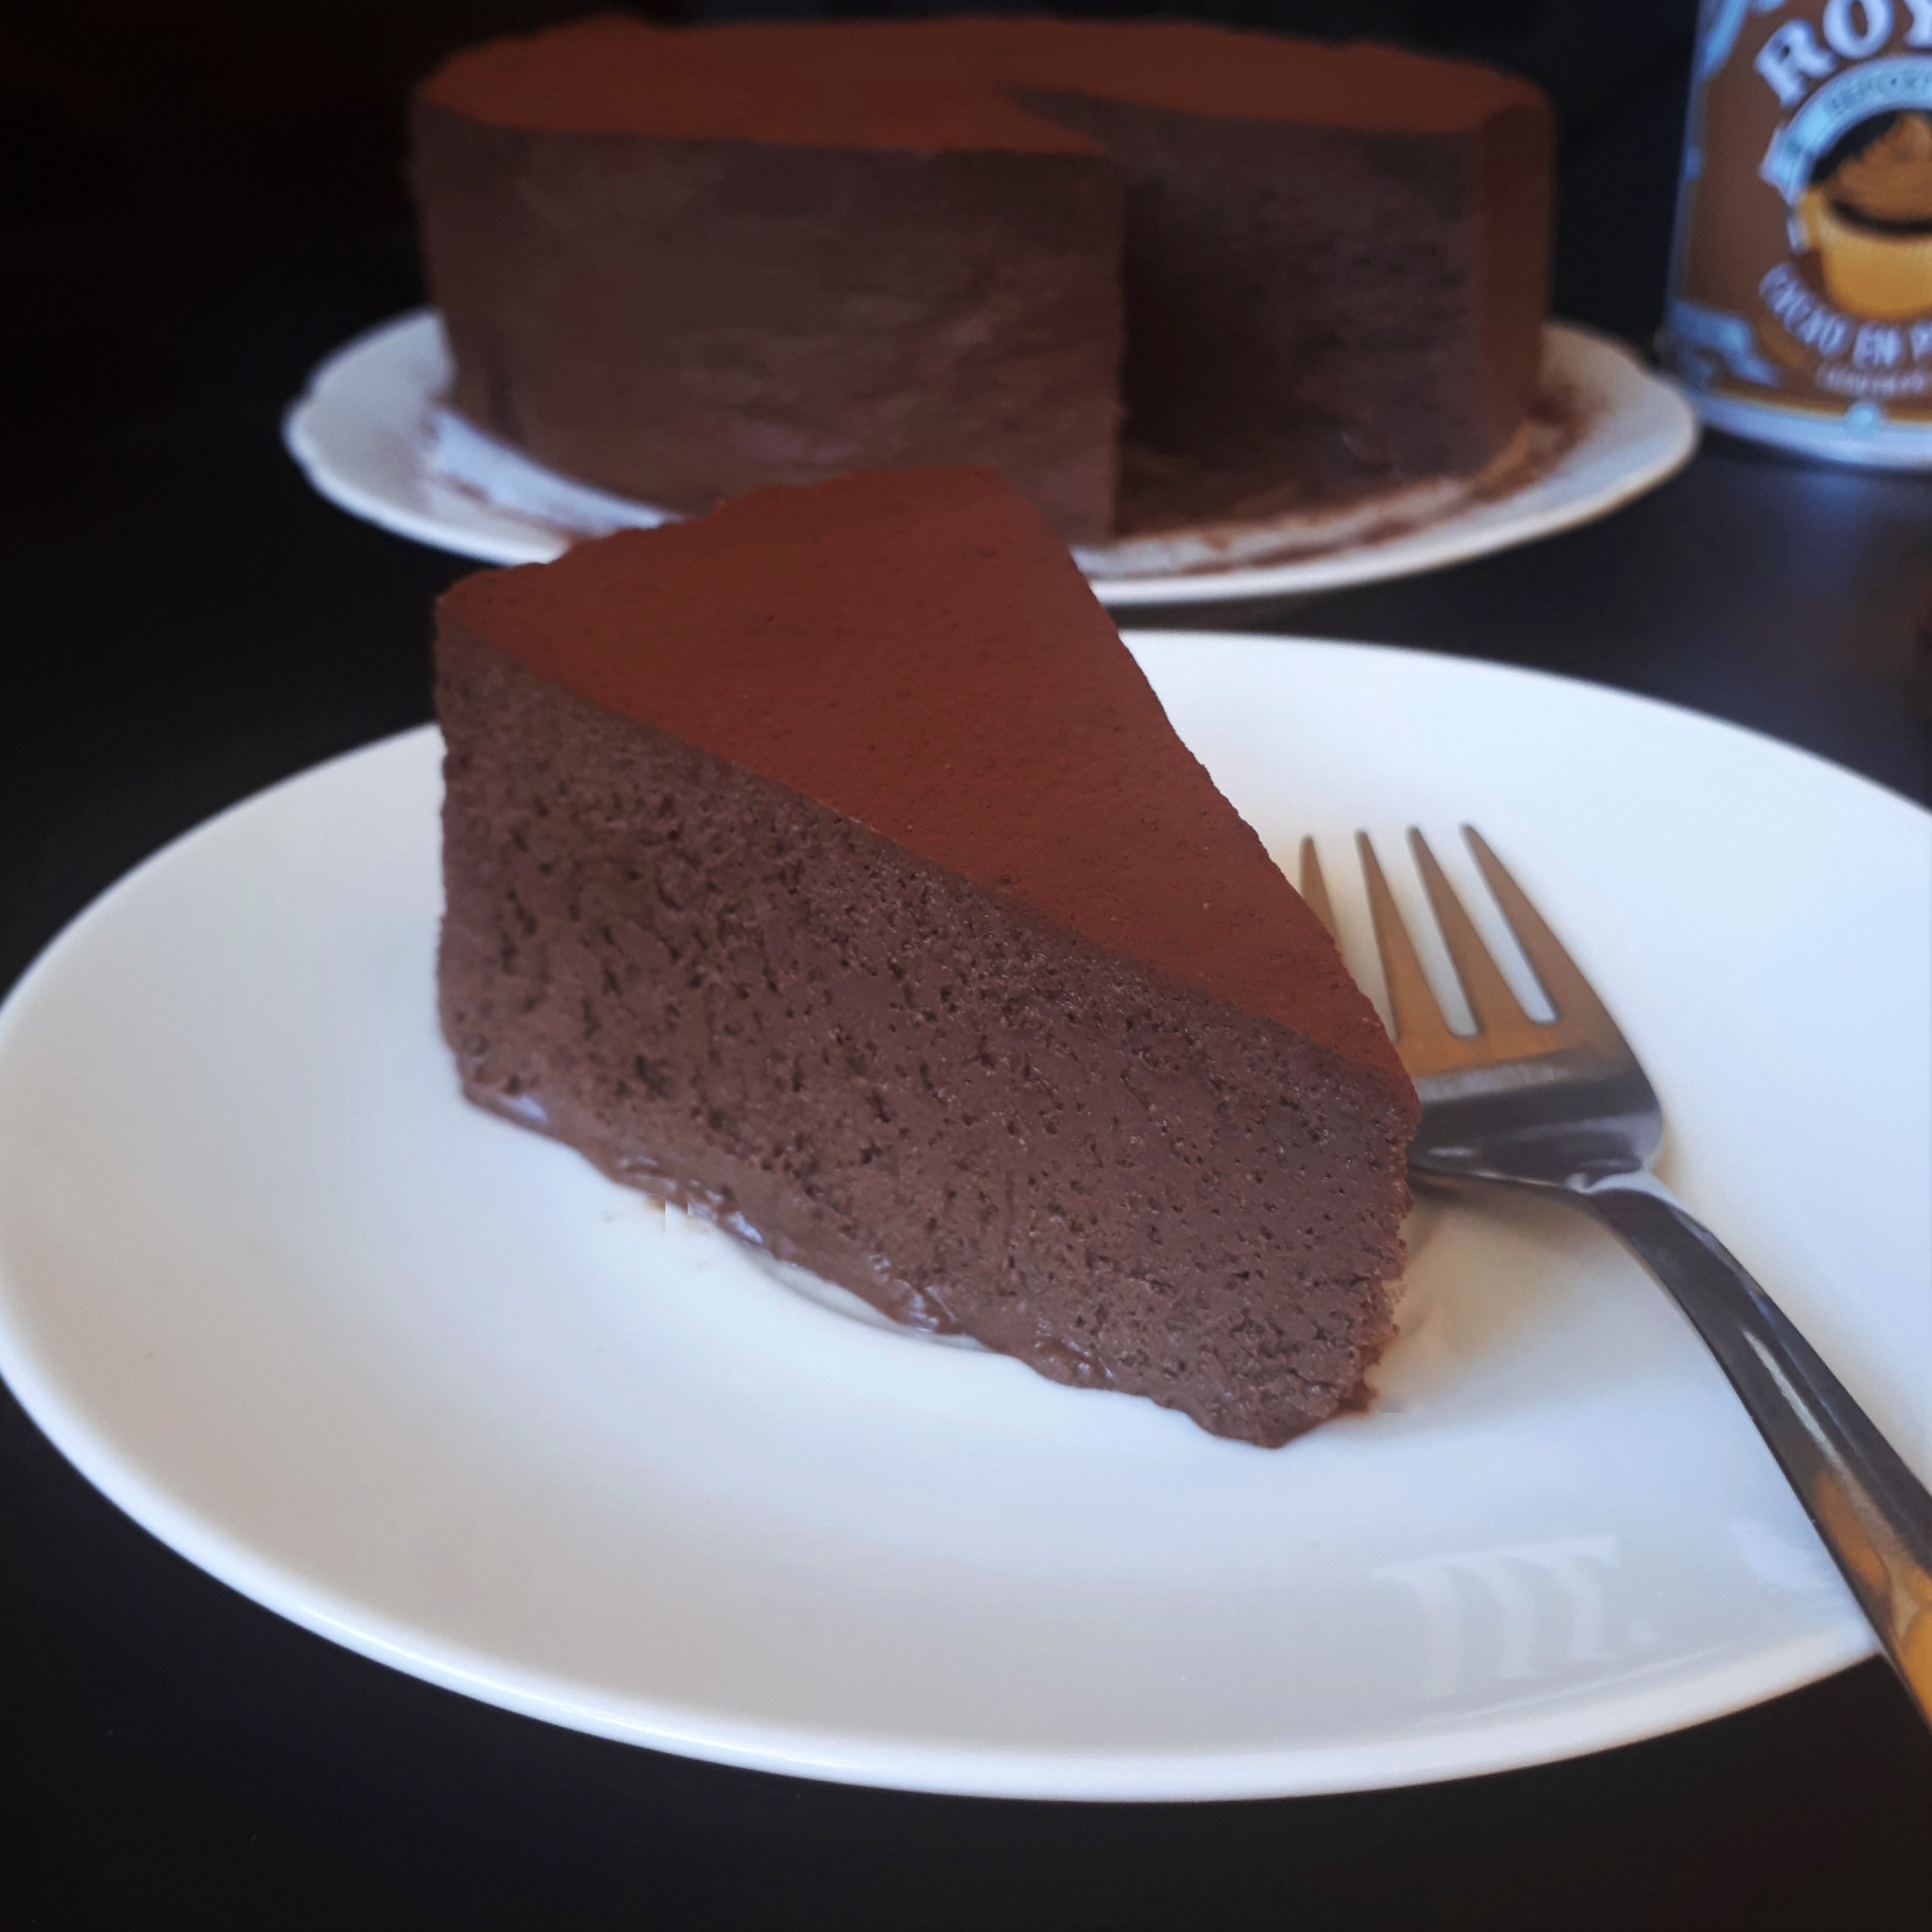 Kúsok penovej čokoládovej torty na bielom tanieri posypanej kakaom antikorová dezertná vidlička na čiernom povrchu v pozadí zvyšok torty na bielom tabnieri a dóza s kakaom